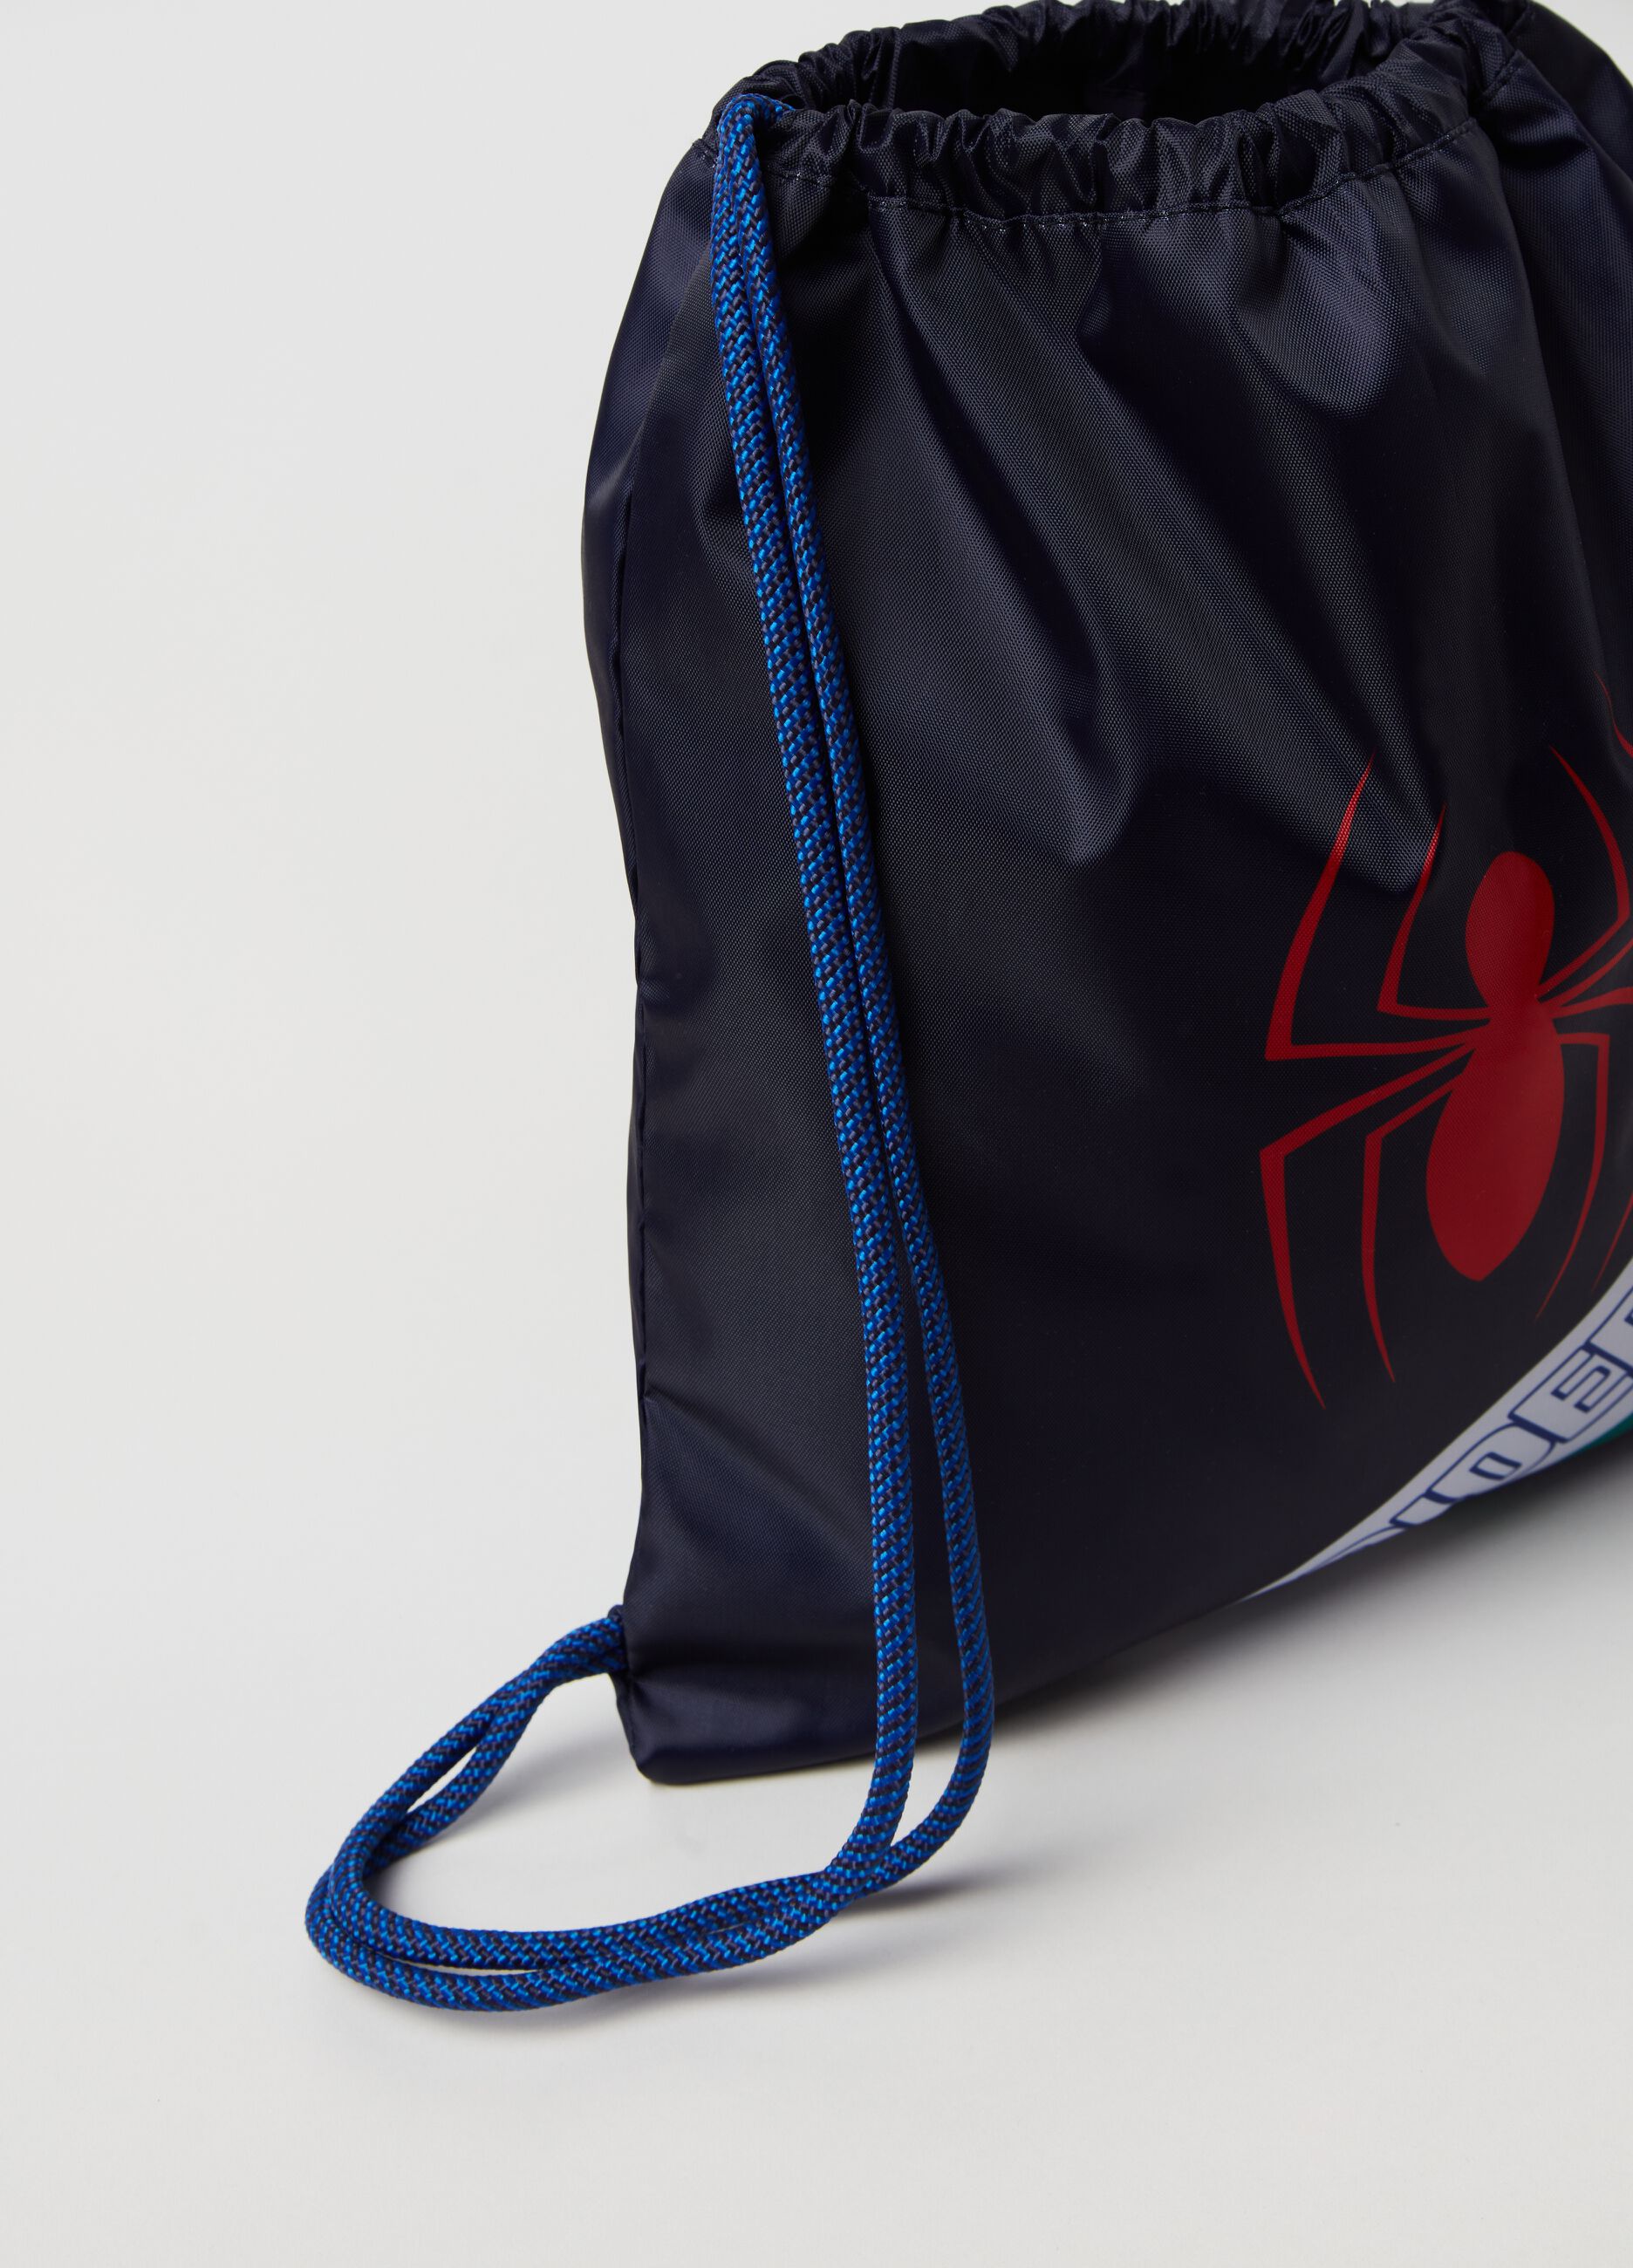 Marvel Spider-Man sack backpack